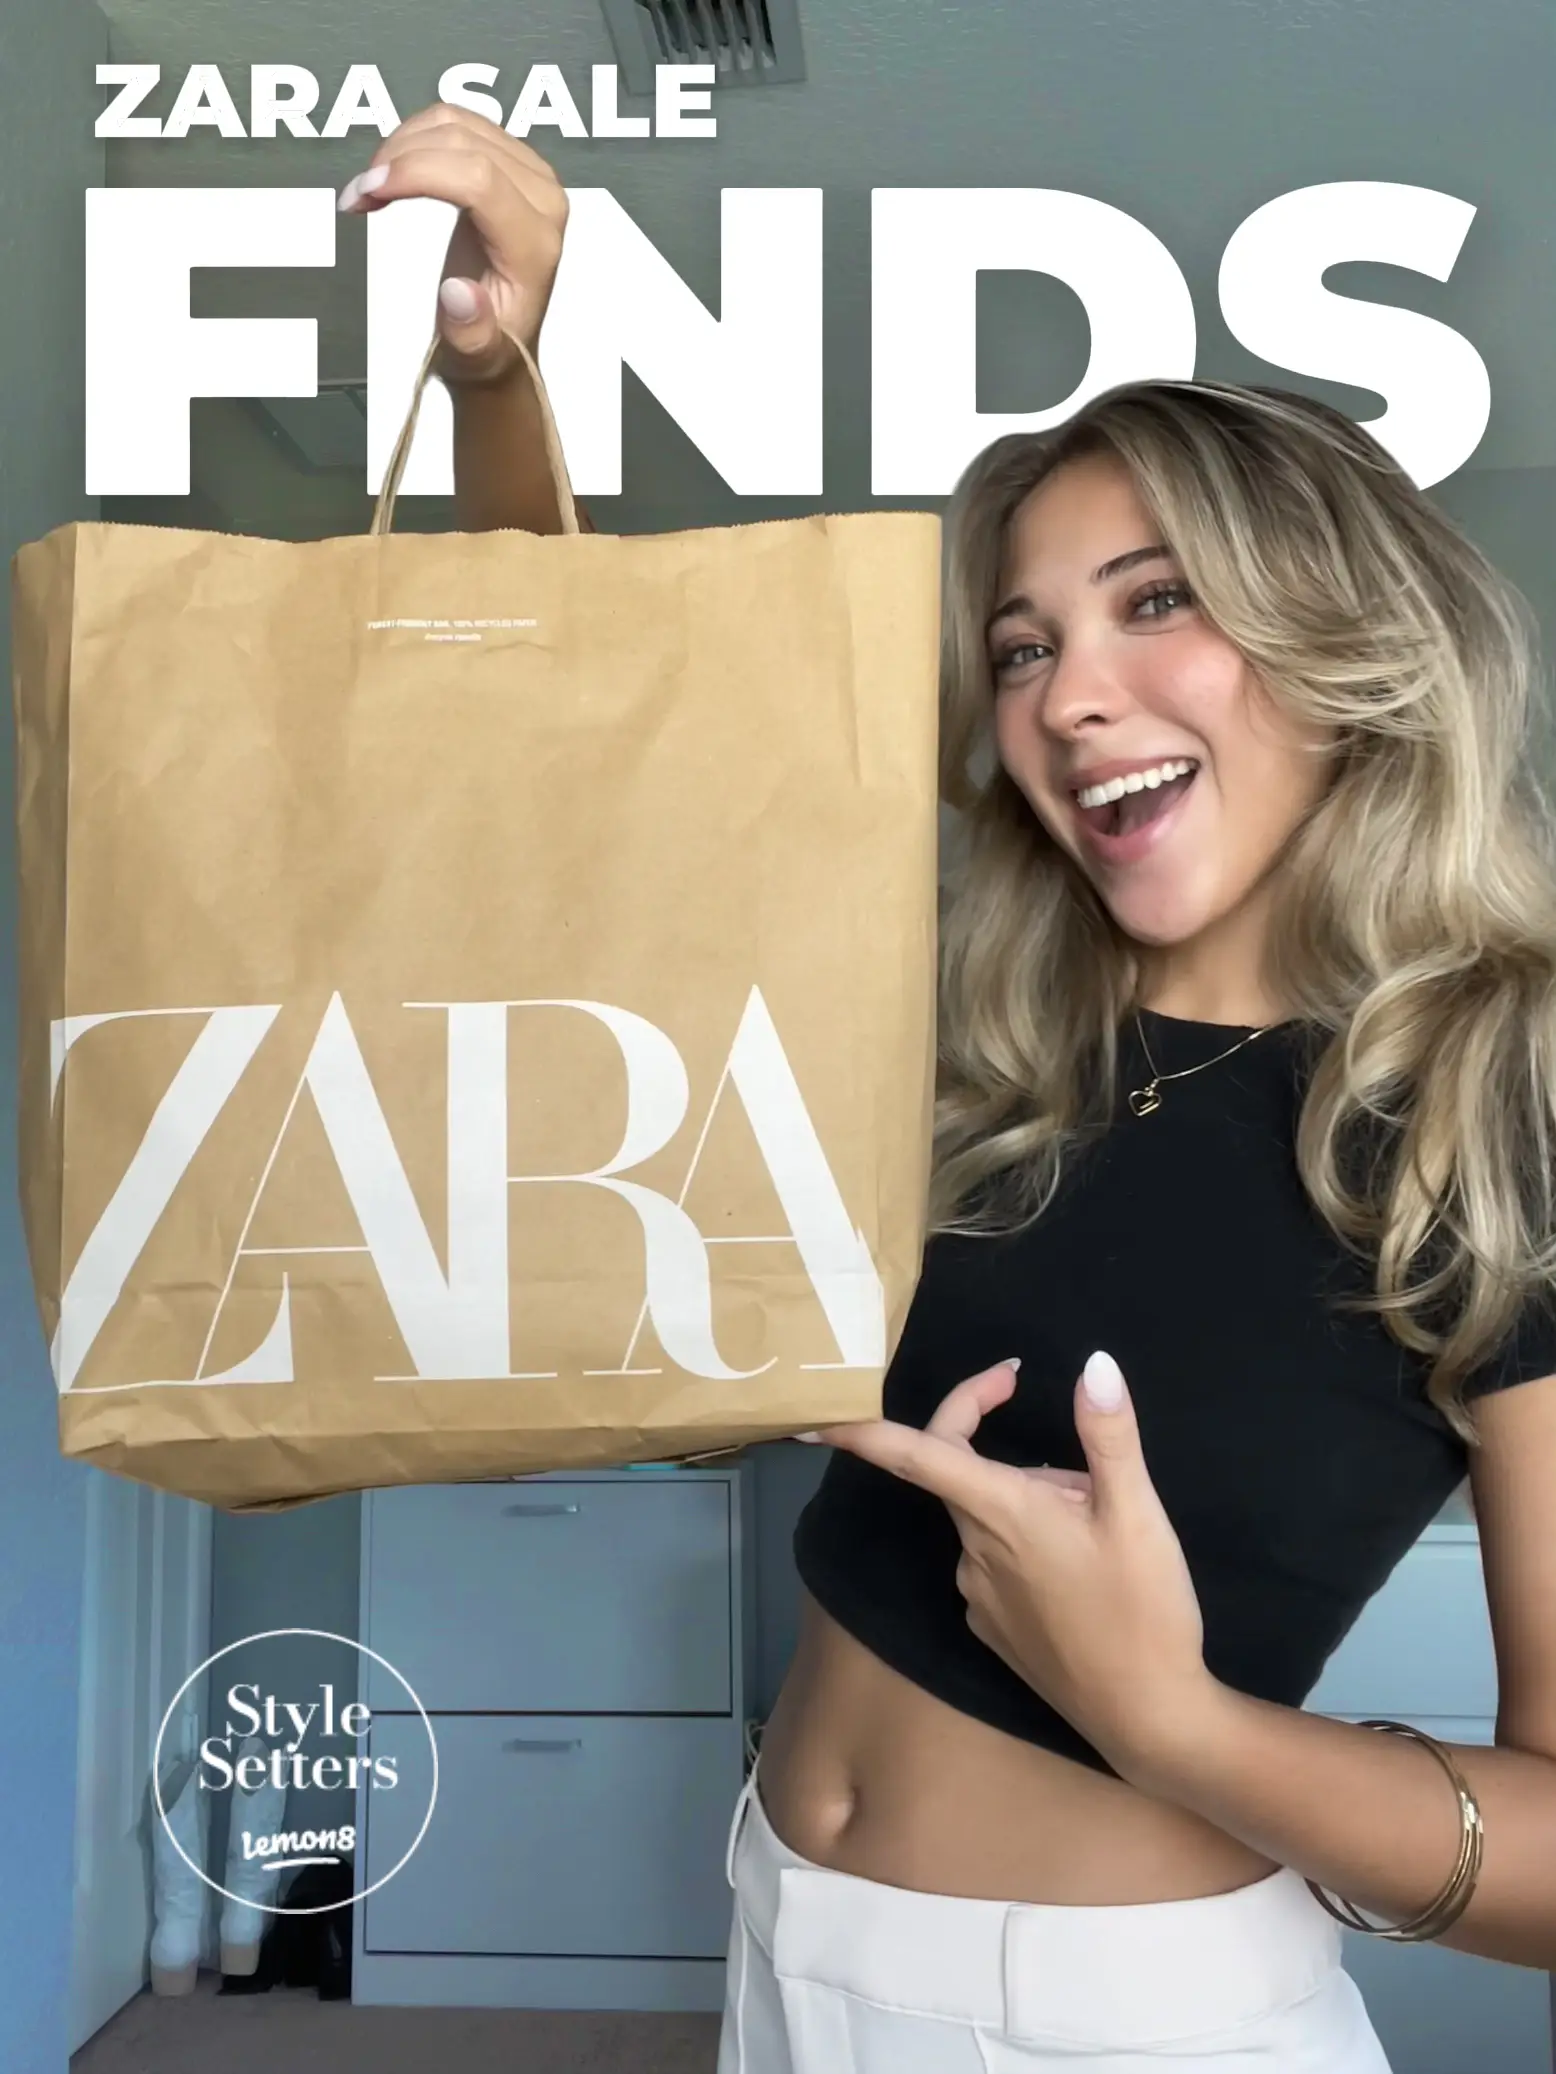 Zara Seamless Sets reviews - Lemon8 Search